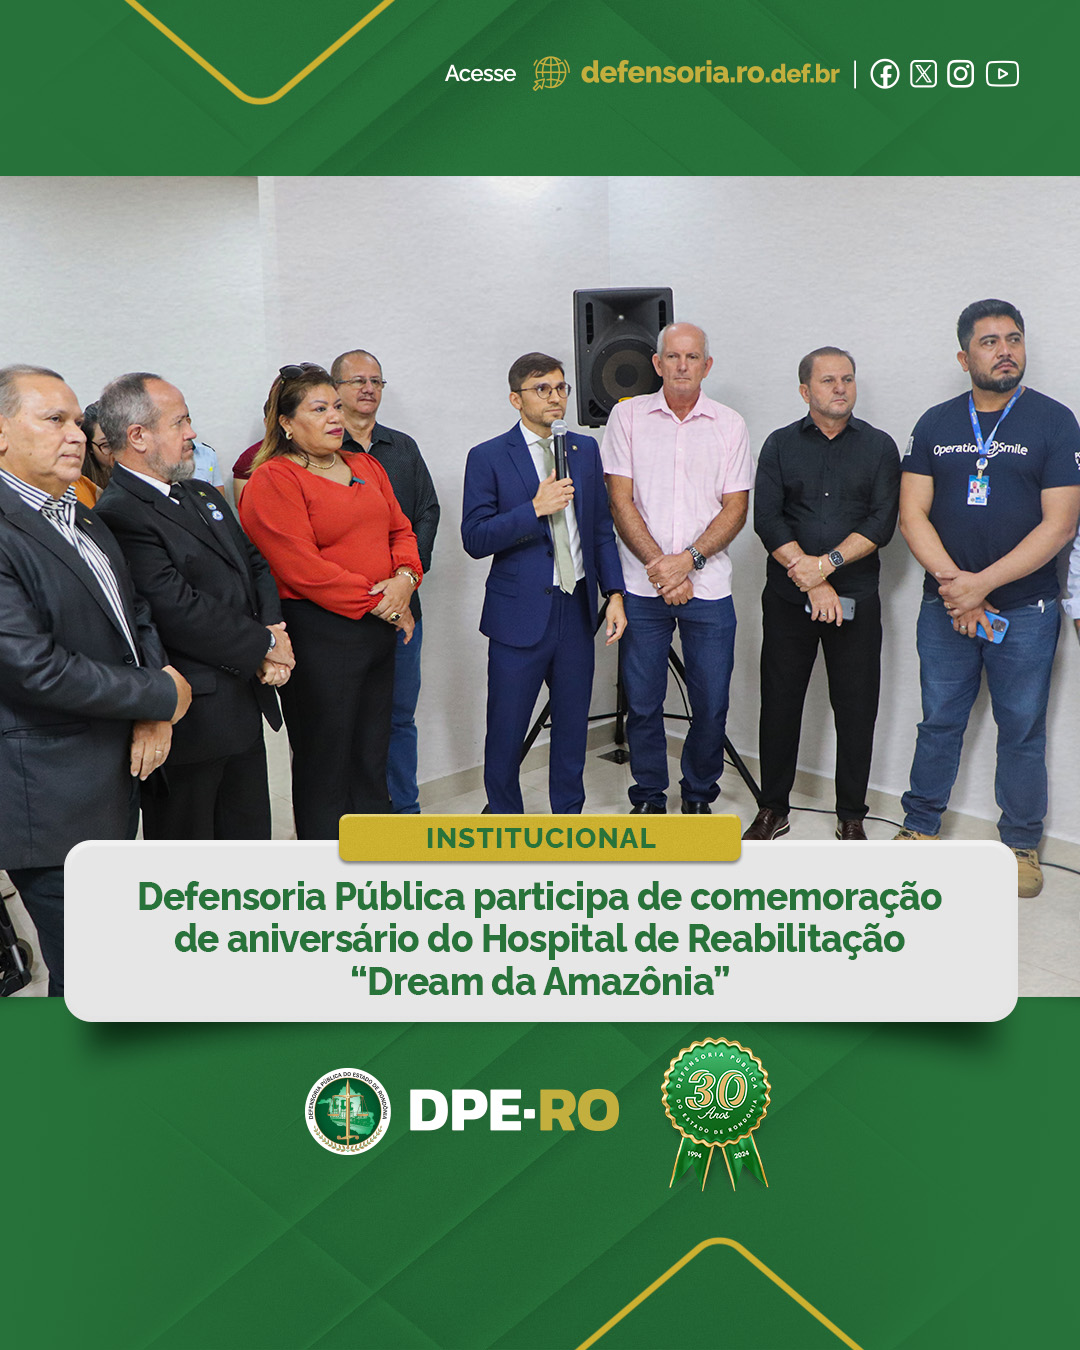 Defensoria Pública participa de comemoração de aniversário do Hospital de Reabilitação “Dream da Amazônia”